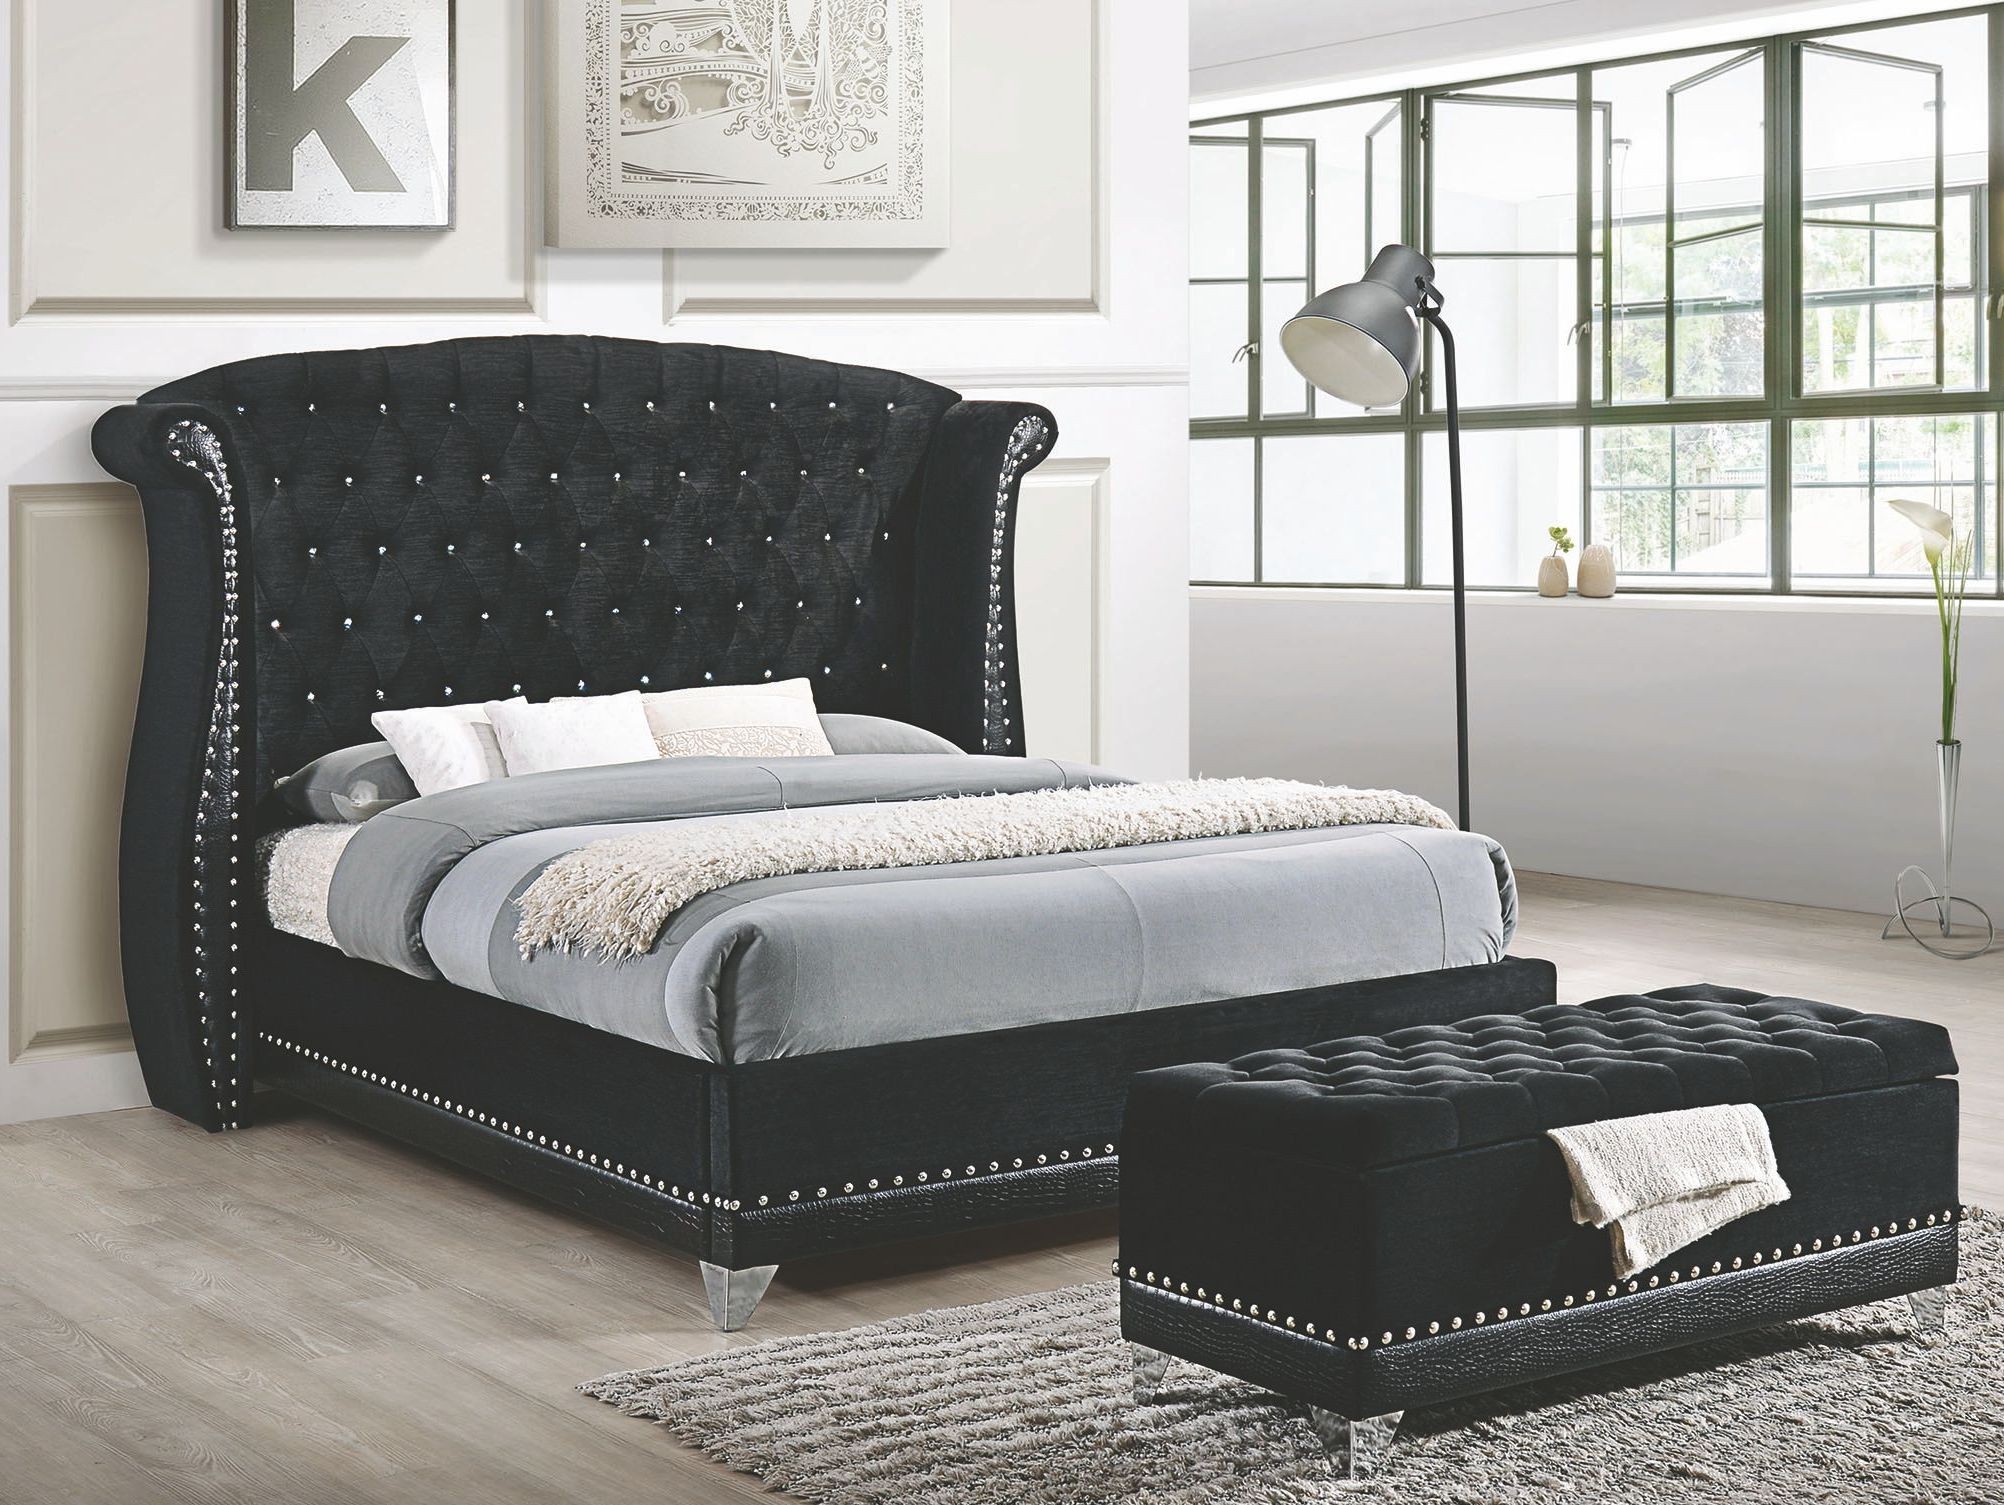 Barzini Black Upholstered Platform Bedroom Set ...